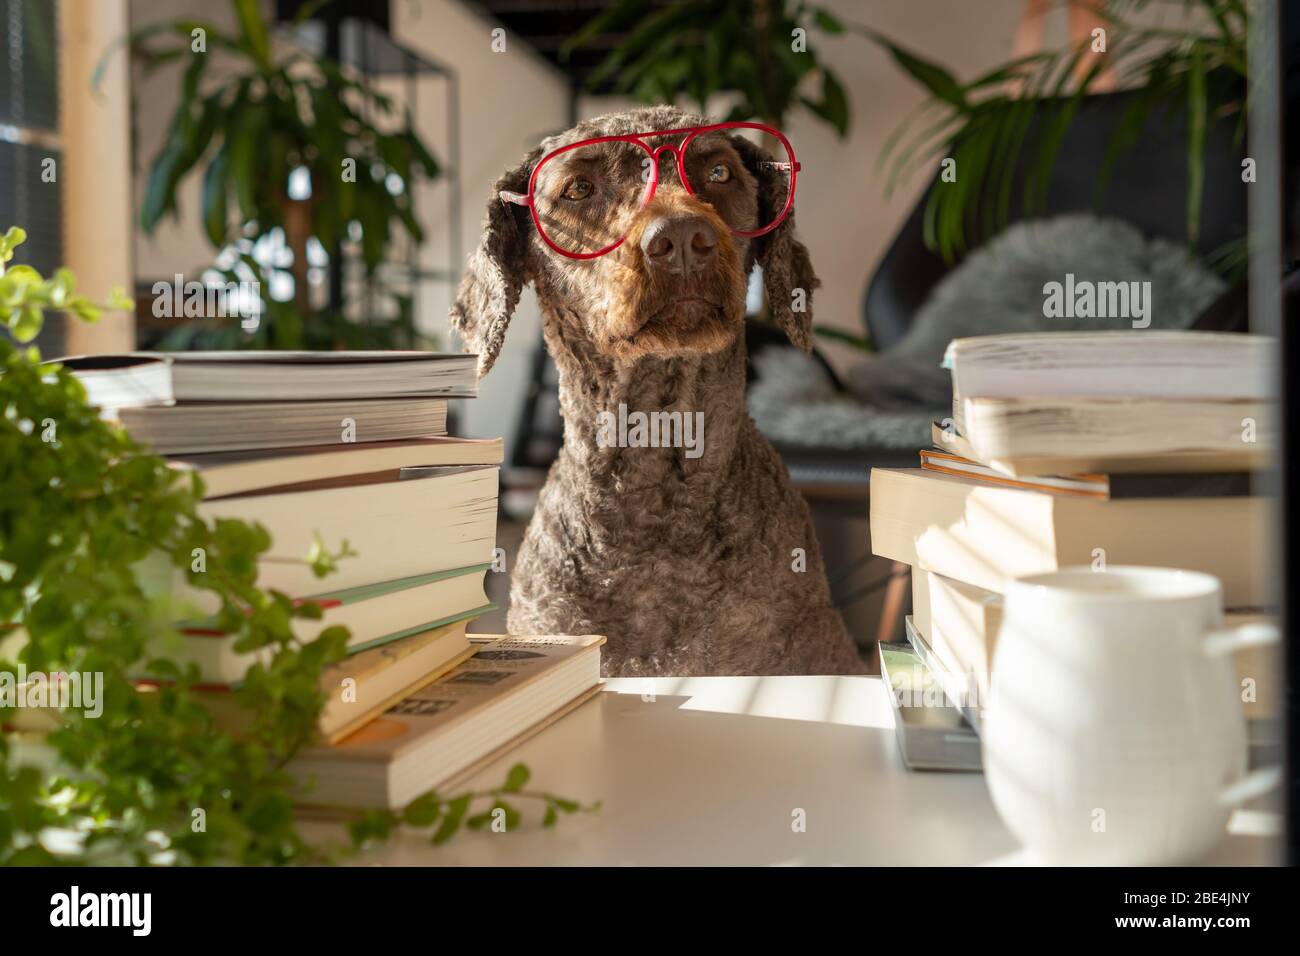 Ein Hund trägt rote Gläser zwischen einem Stapel Bücher in einer Wohnung mit vielen Pflanzen während des Sonnenuntergangs Stockfoto